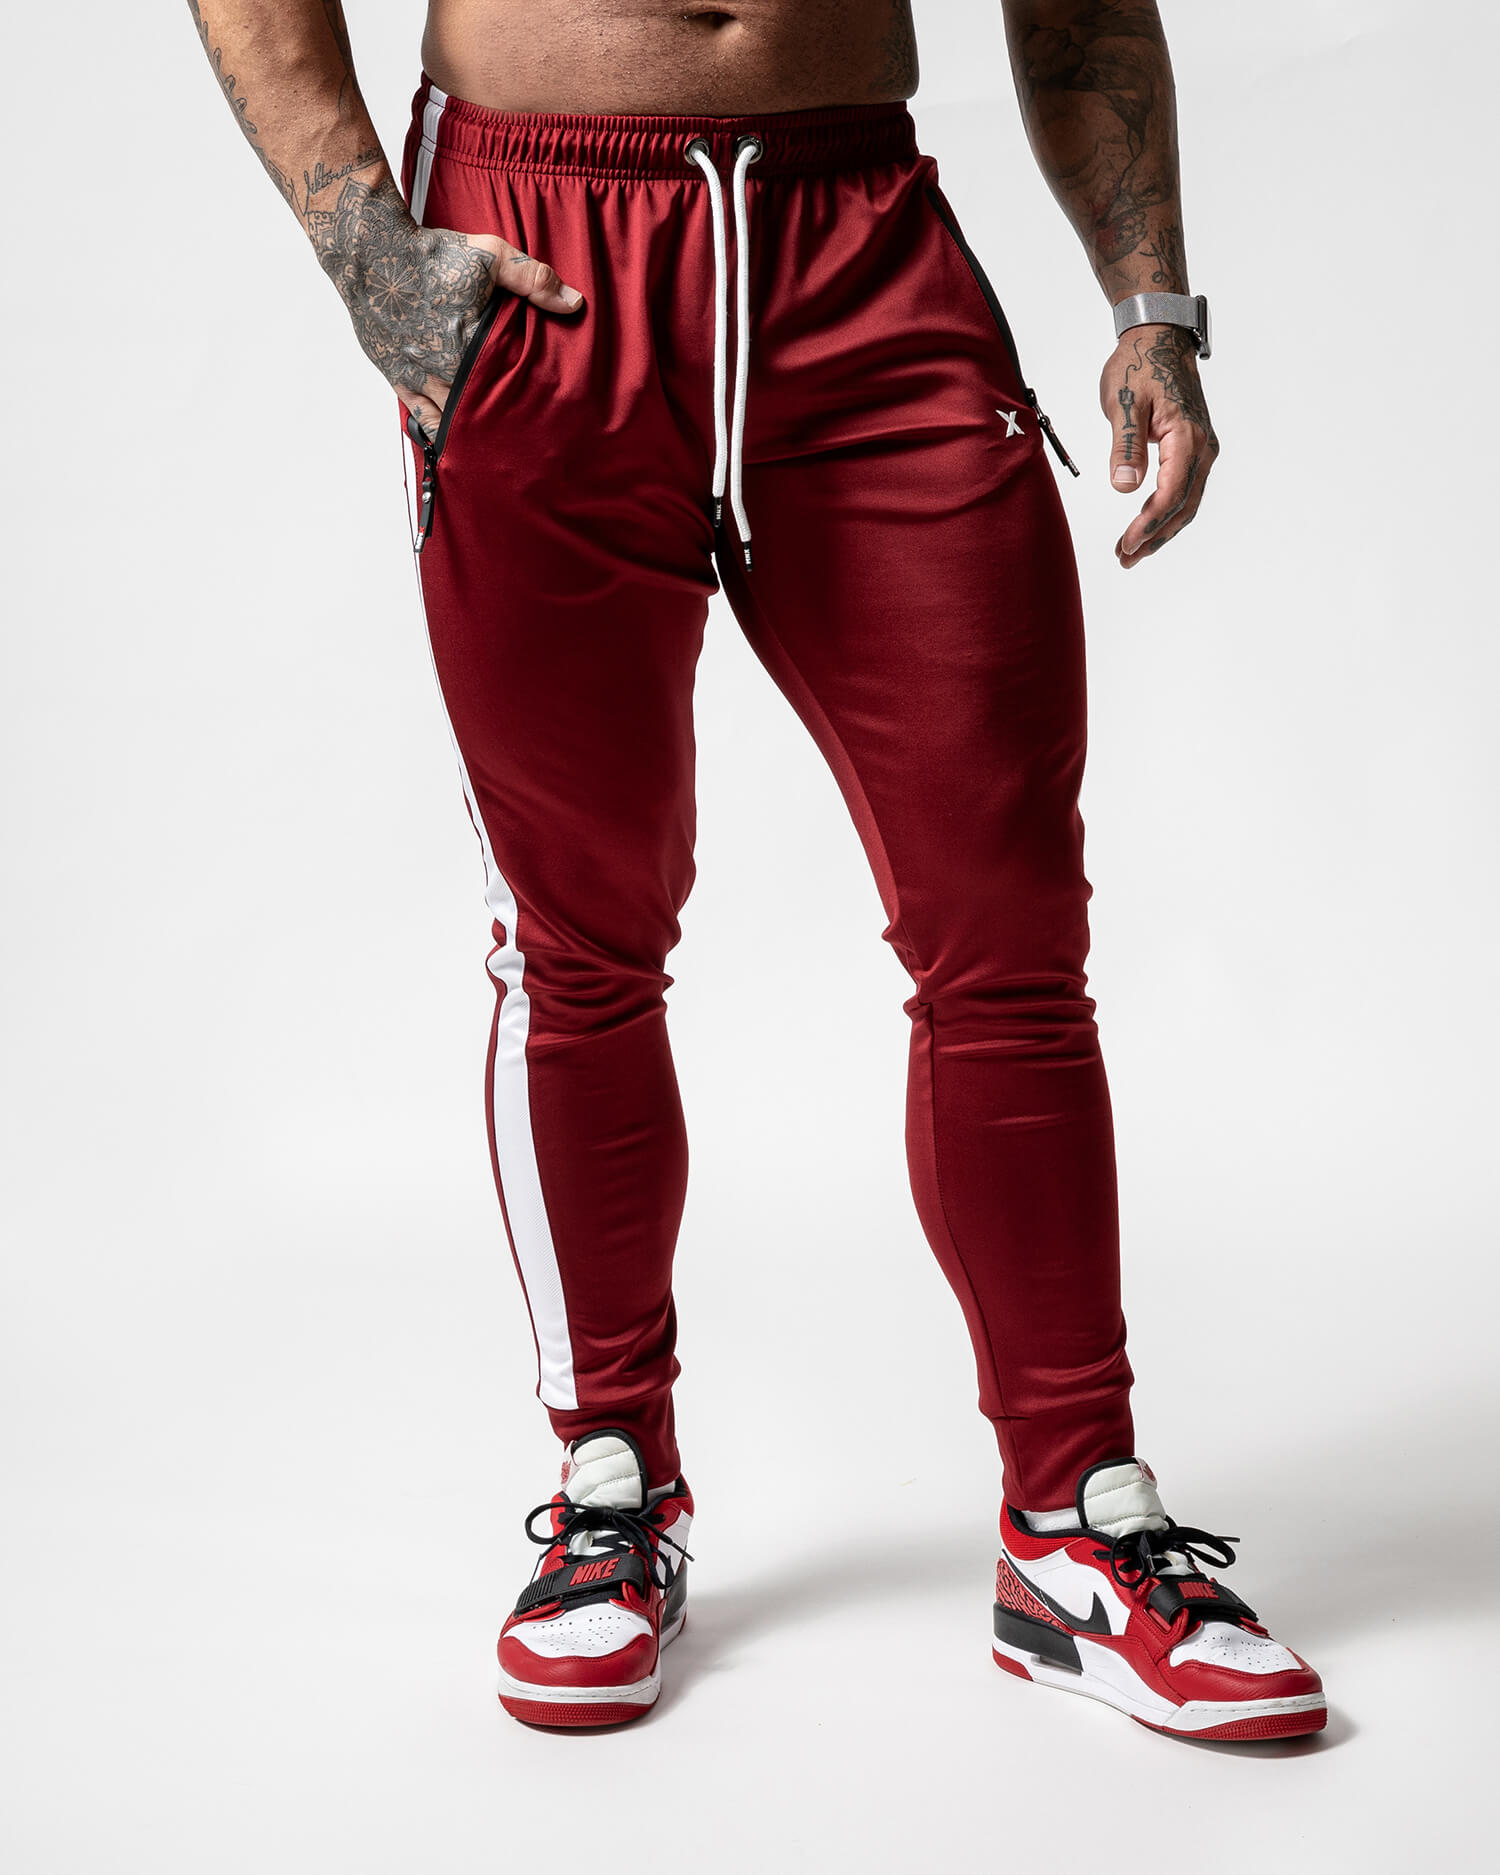 Pantalón Deportivo - Rojo adidas